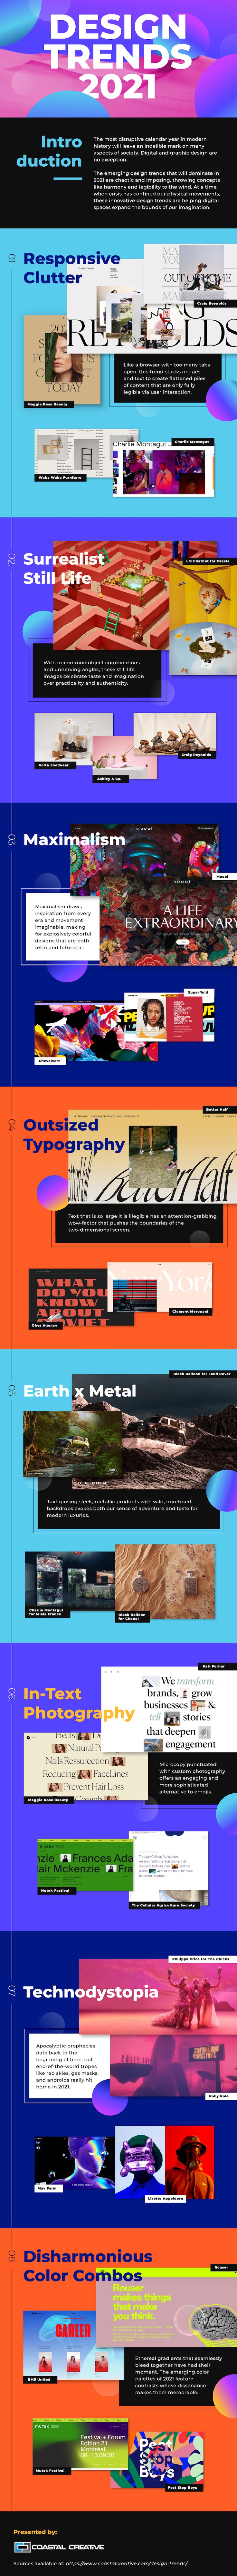 8 digital and graphic design trends for 2021 | infographic – marketingprofs.com